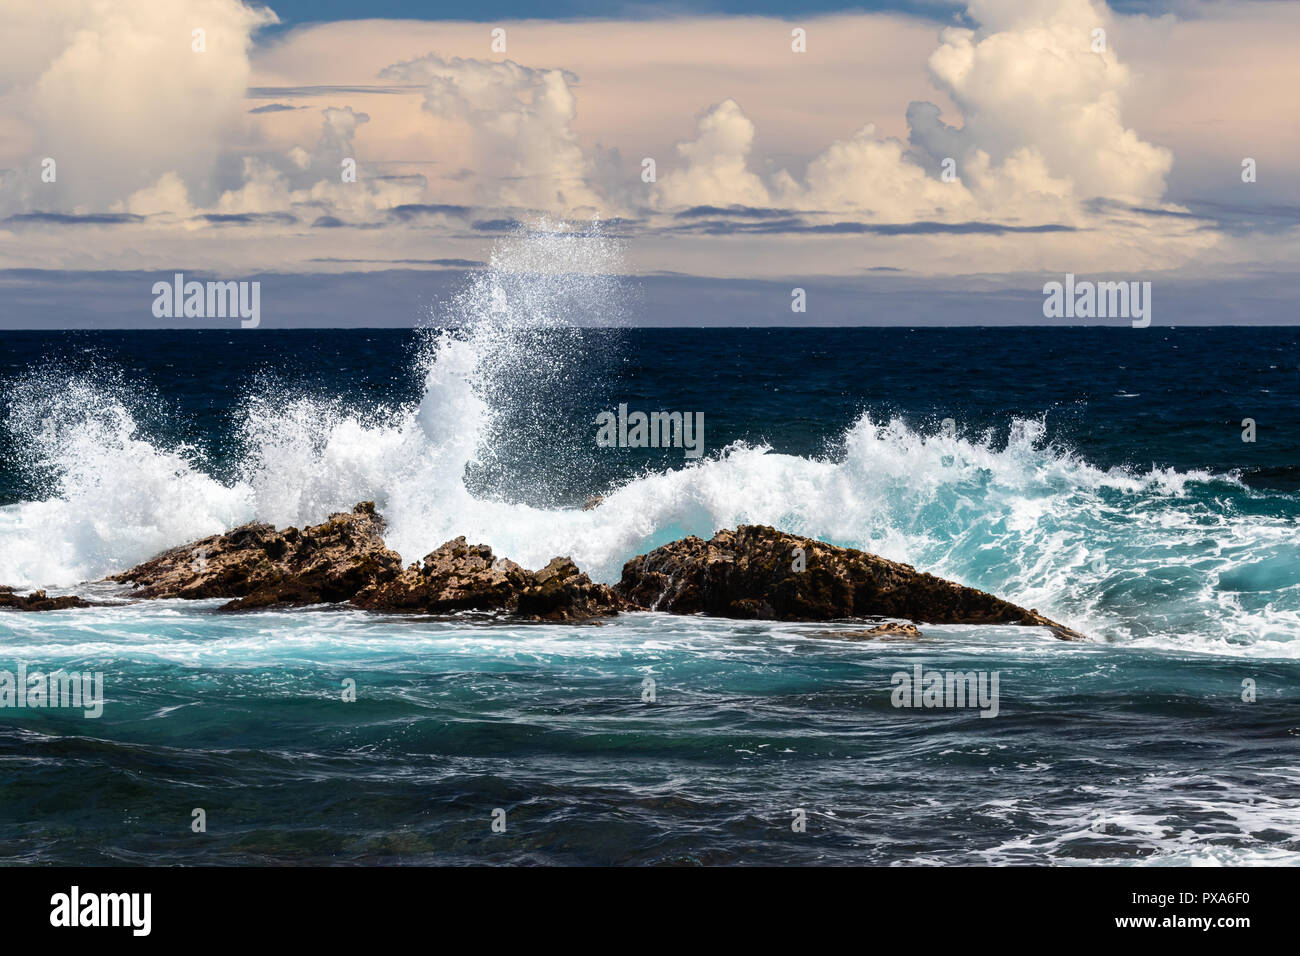 Ola rompiendo en roca oscura; blanco spray en el aire, onda a un lado oscuro y nubes en el fondo del océano. Playa de arena negra, Punaluu, Hawai. Foto de stock